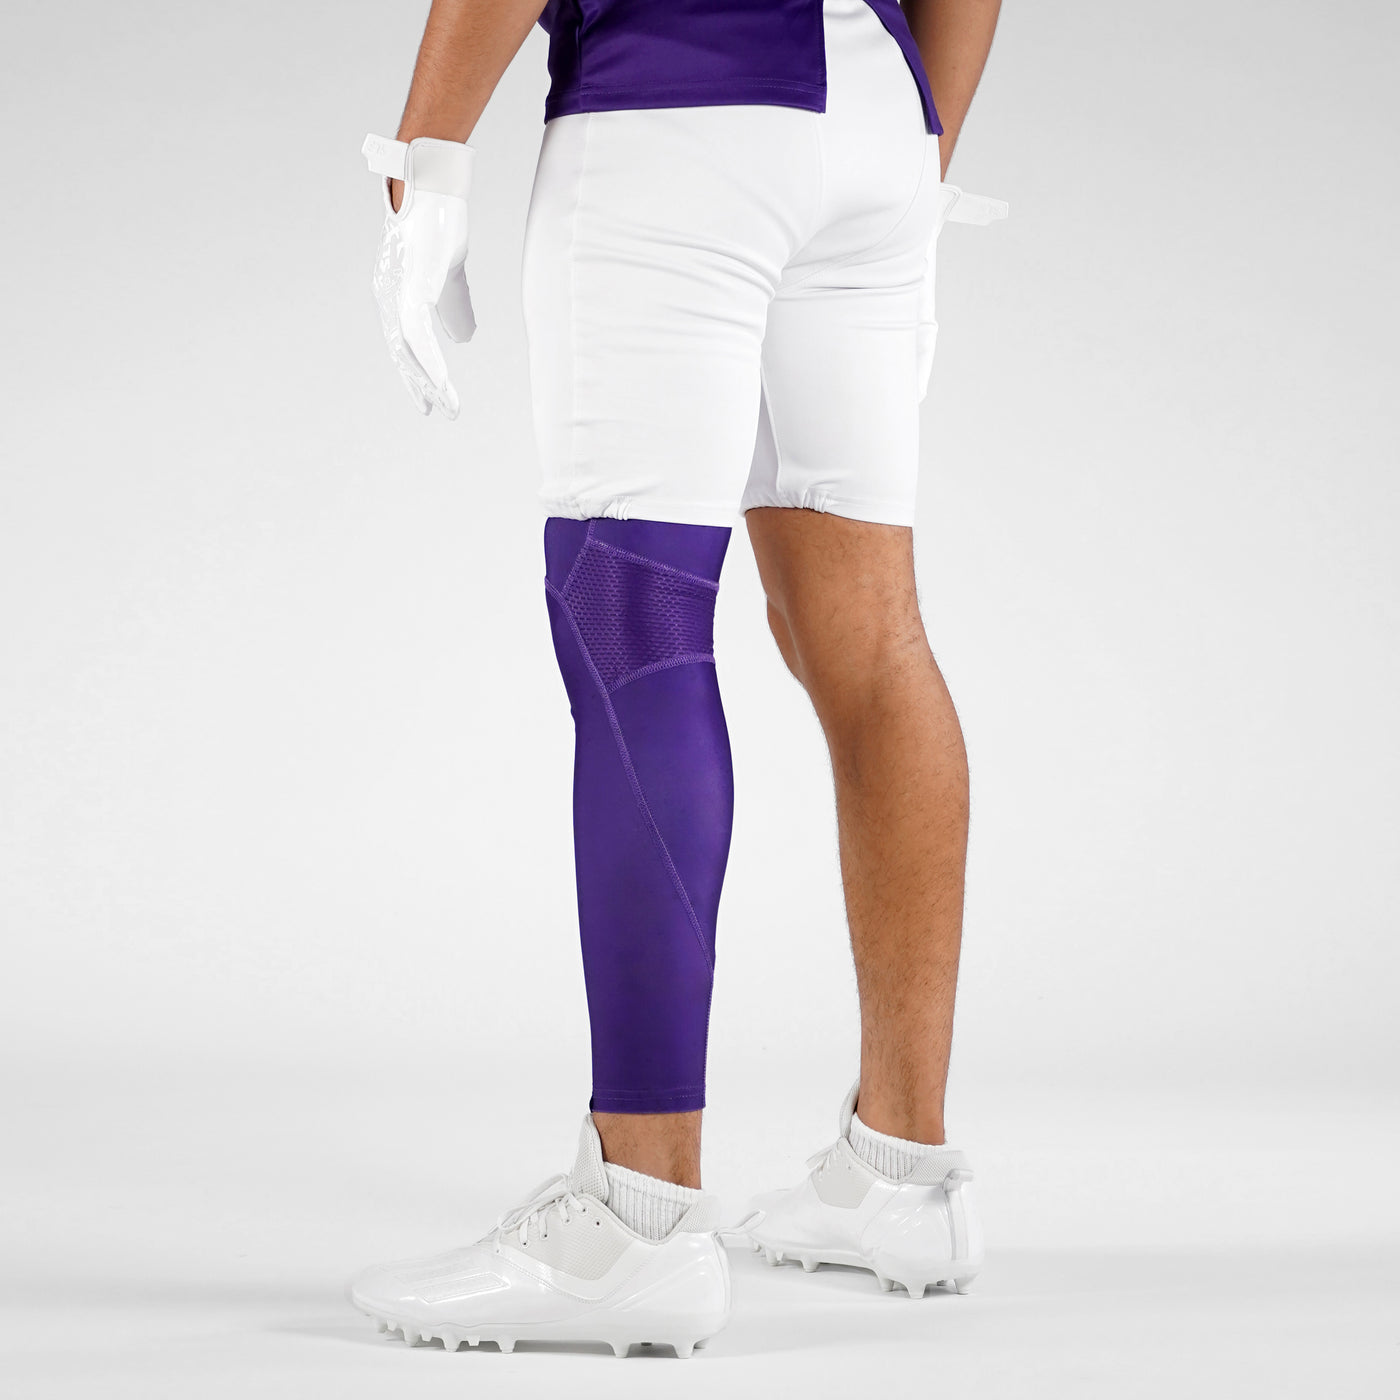 Hue Purple Football Pro Leg Sleeve